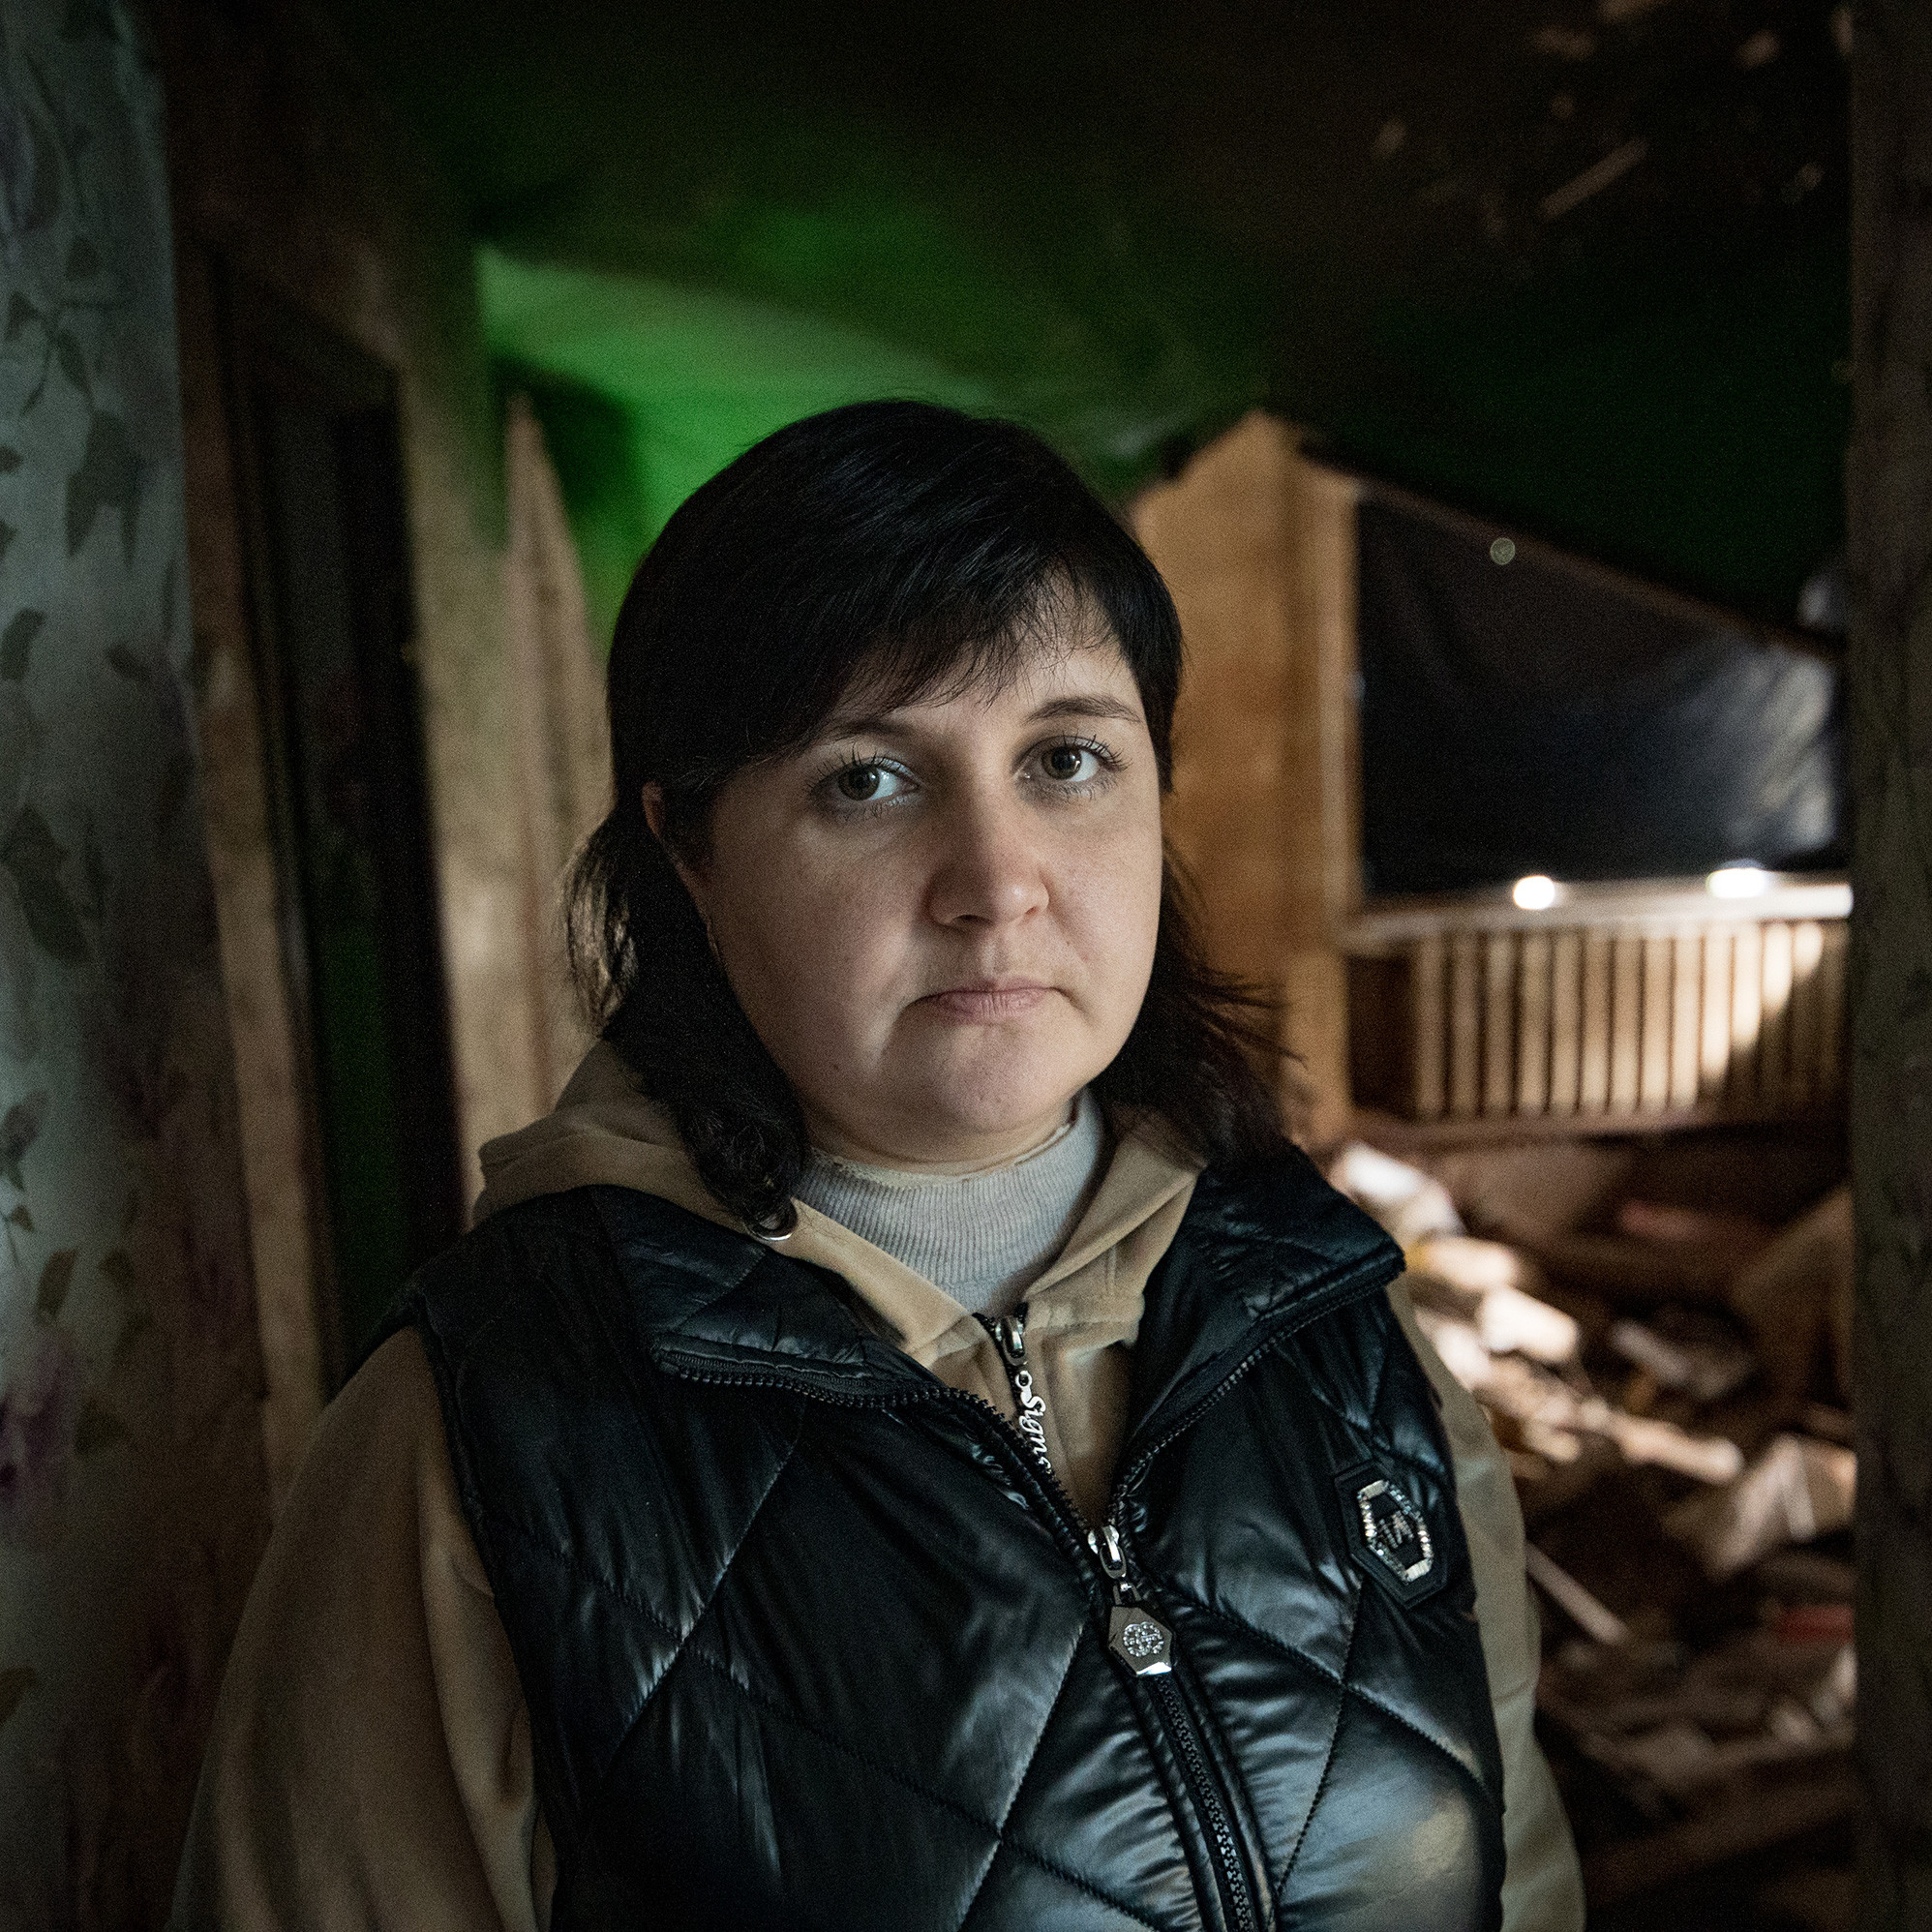 Eine Frau in Winterjacke steht in der Eingangstür einer zerstörten Wohnung und schaut in die Kamera.